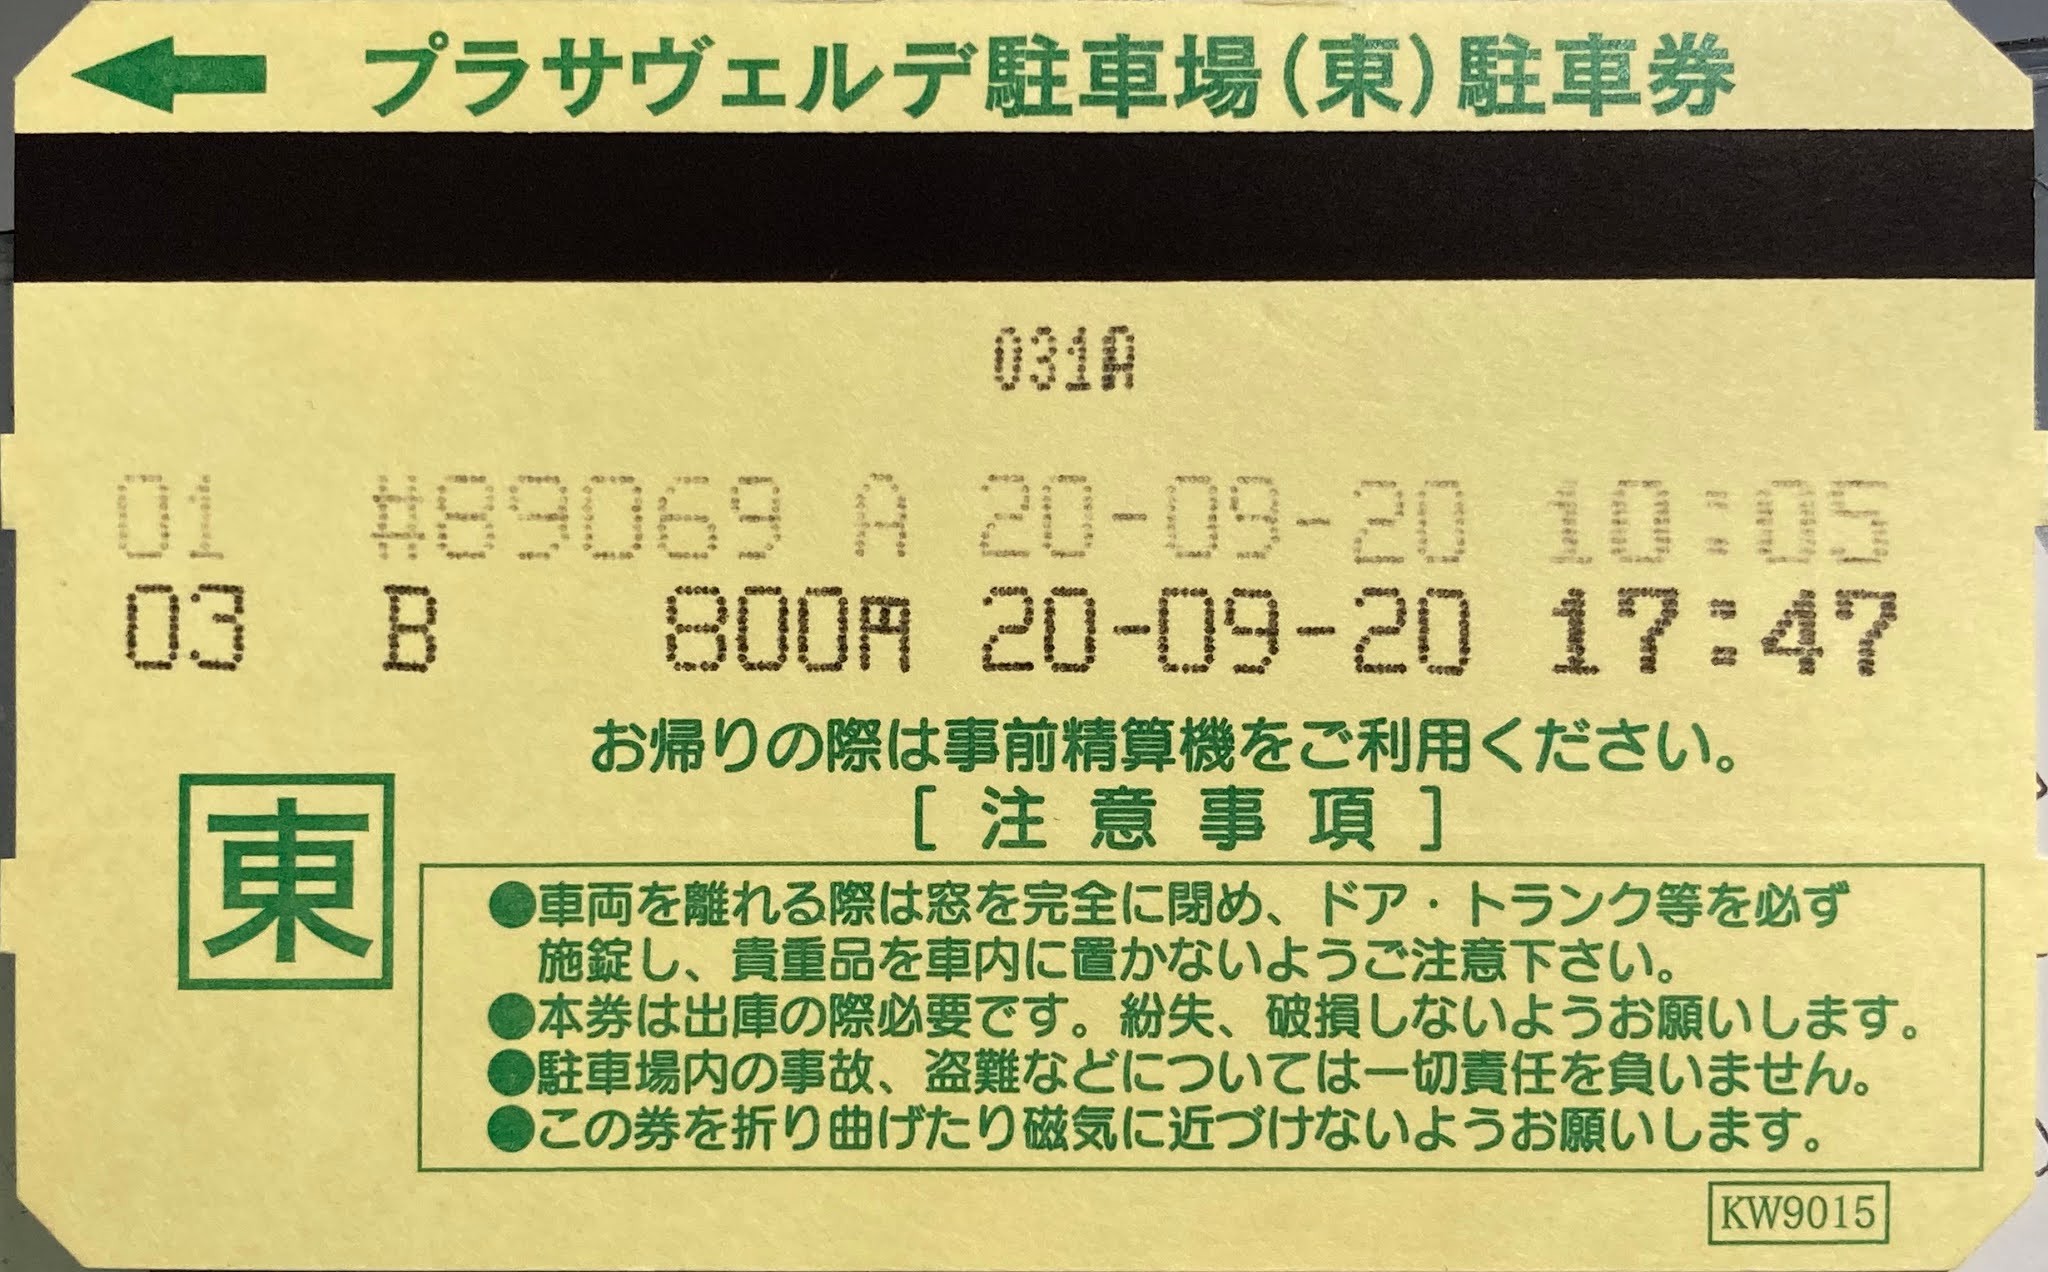 yoshi223のブログ: コインパーキングの駐車券・領収書・レシート 2020/12/22分まで反映